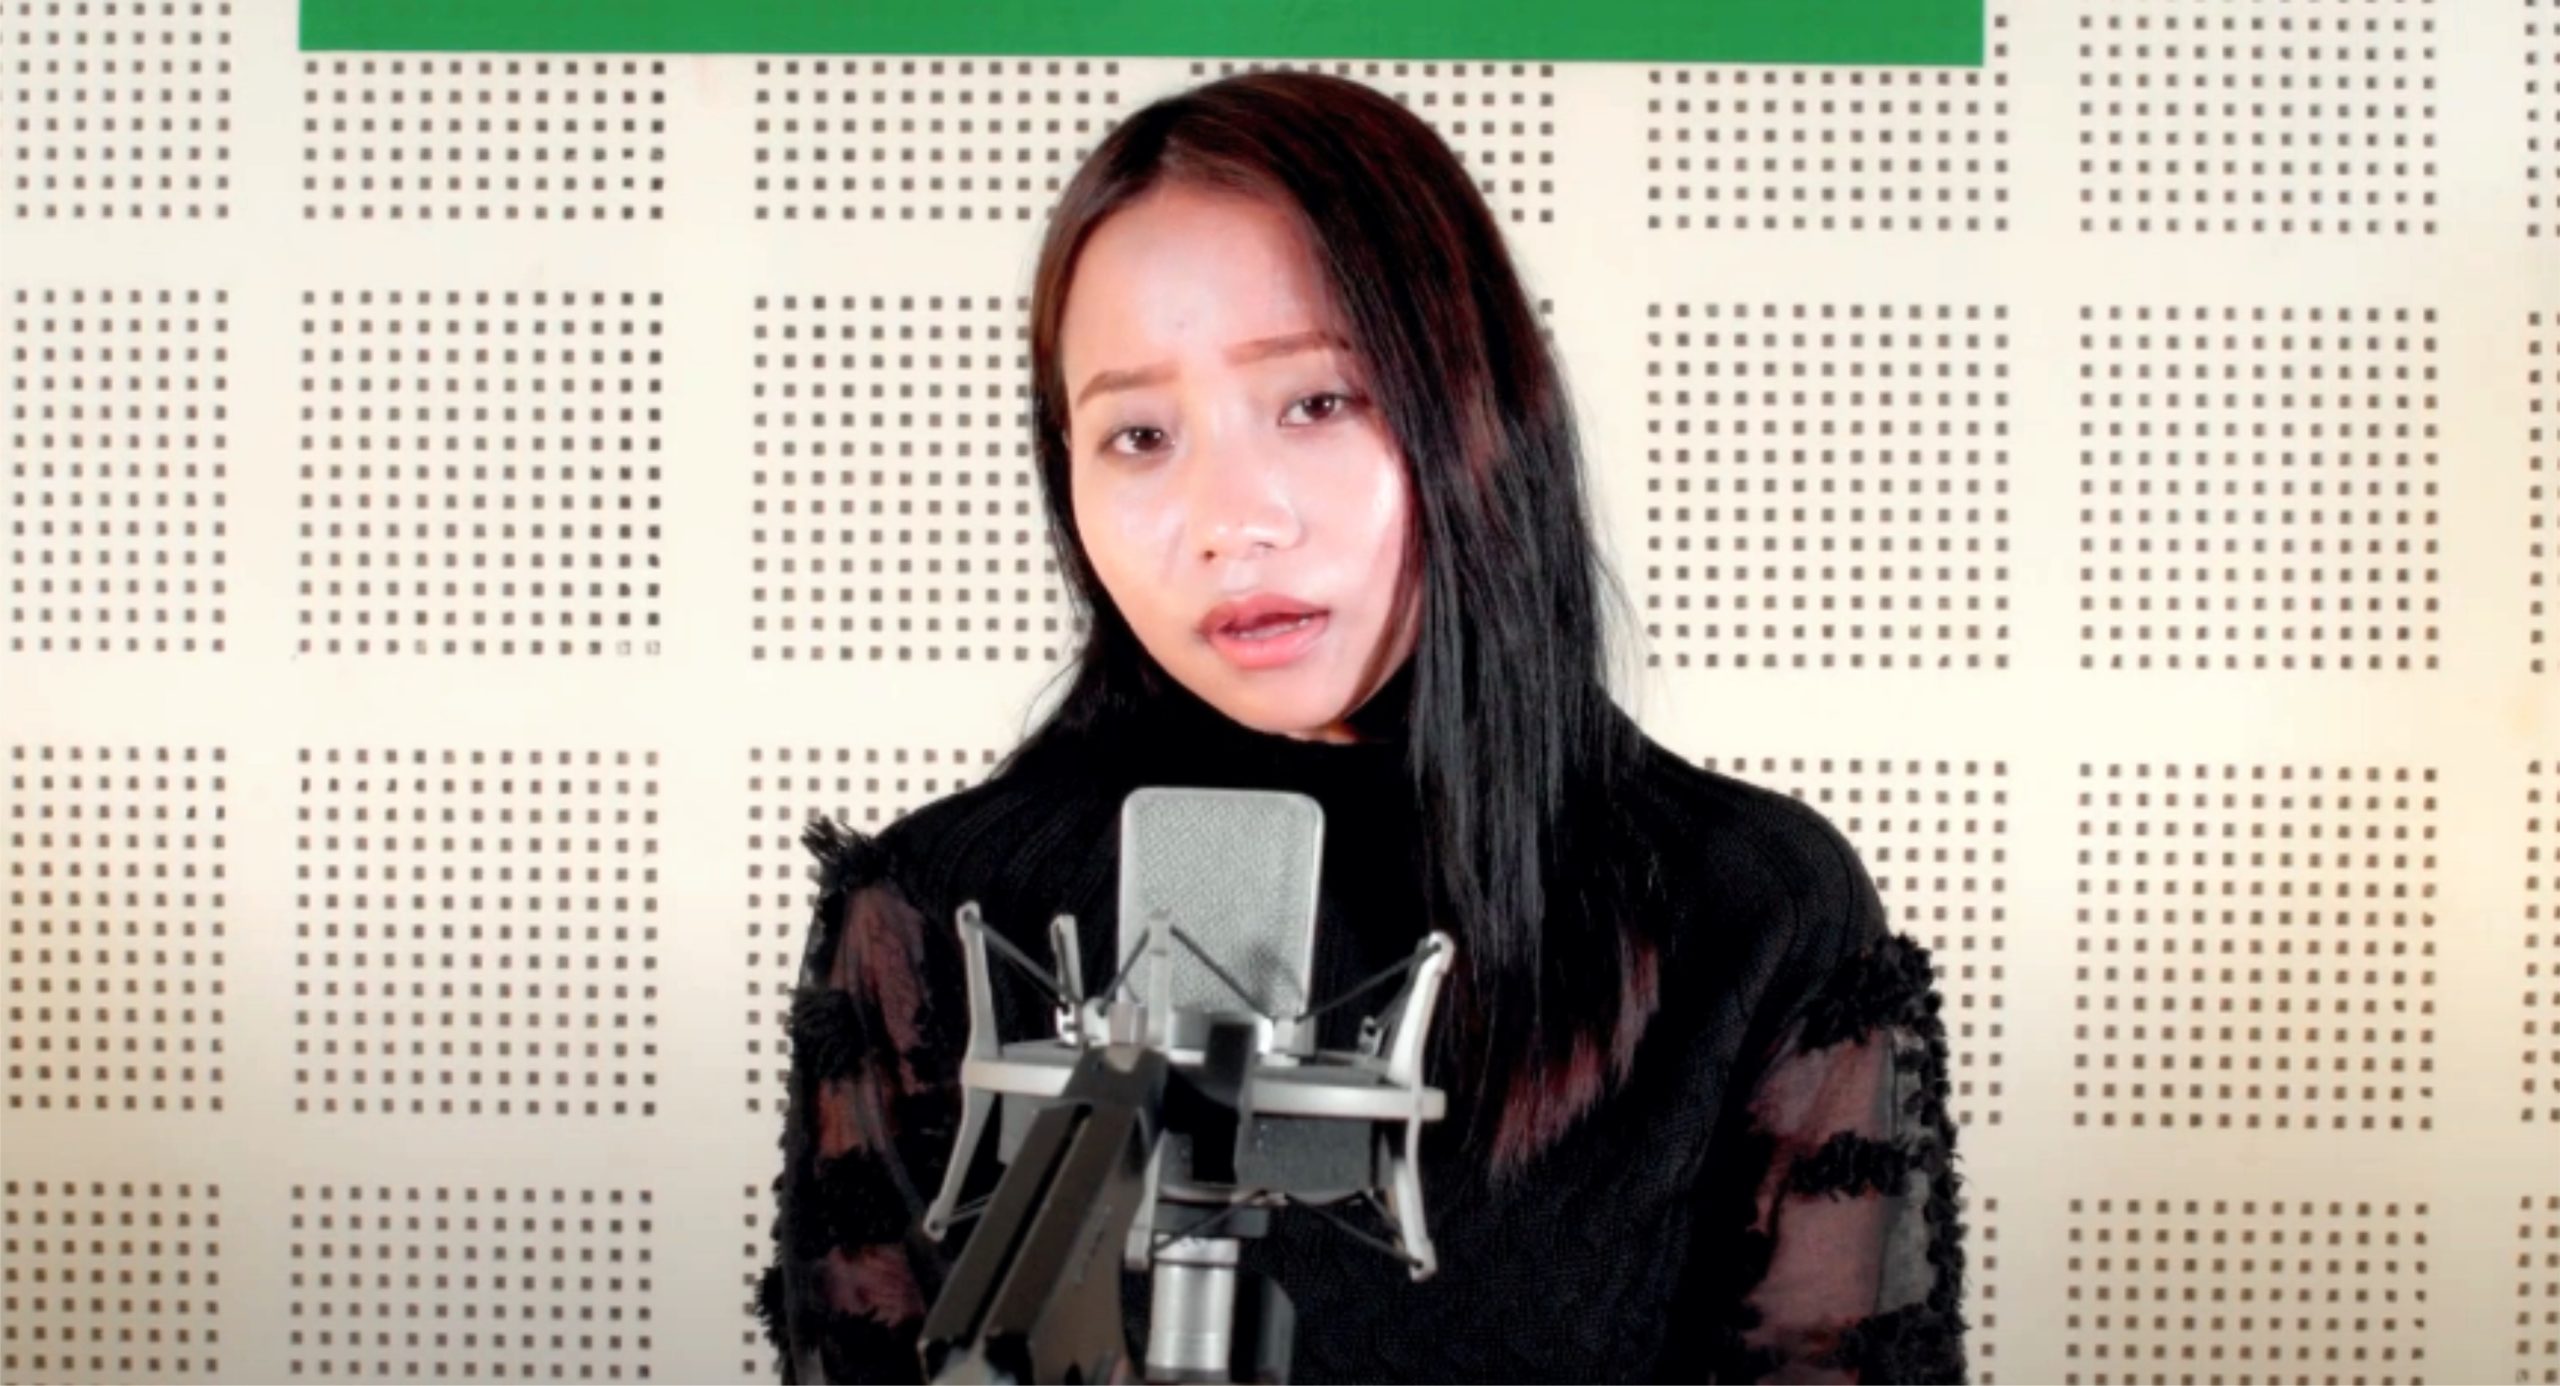 सबिना योङहाङको बाबा प्रति समर्पित गीत ‘मेरो बाबा’ सार्वजनिक(भिडियो सहित)